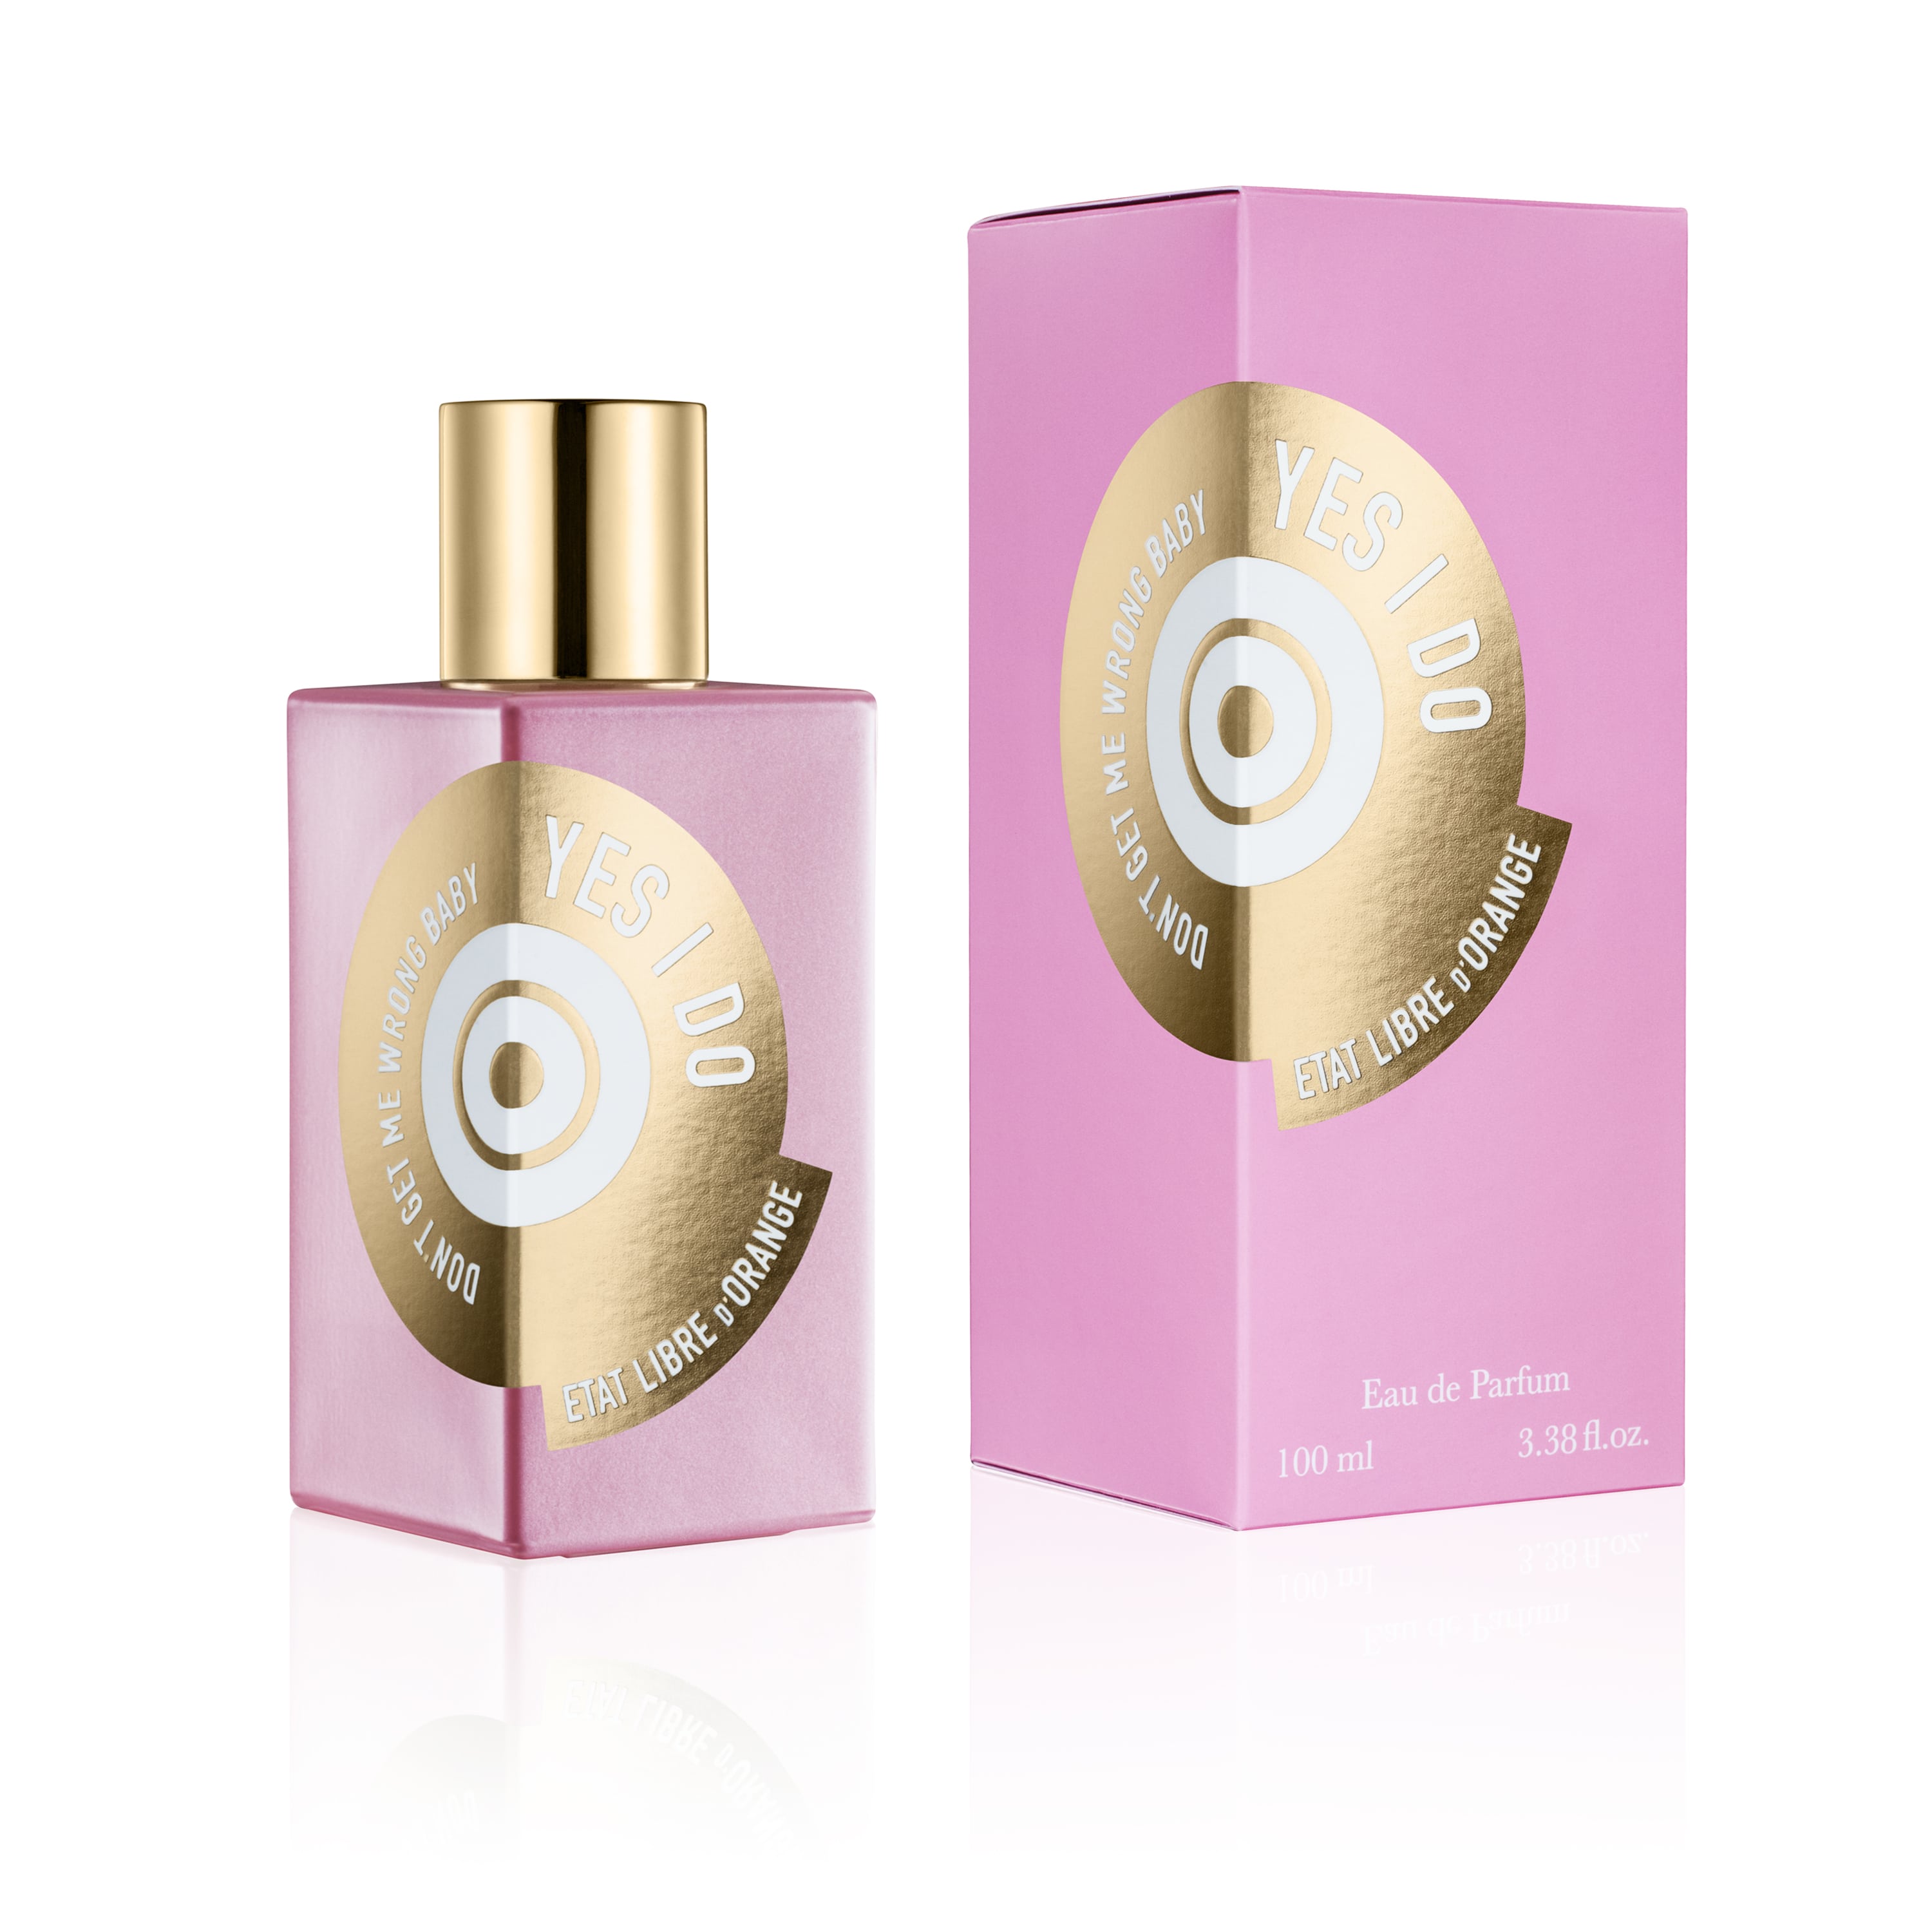 Yes I Do - Eau de Parfum | Etat Libre d'Orange